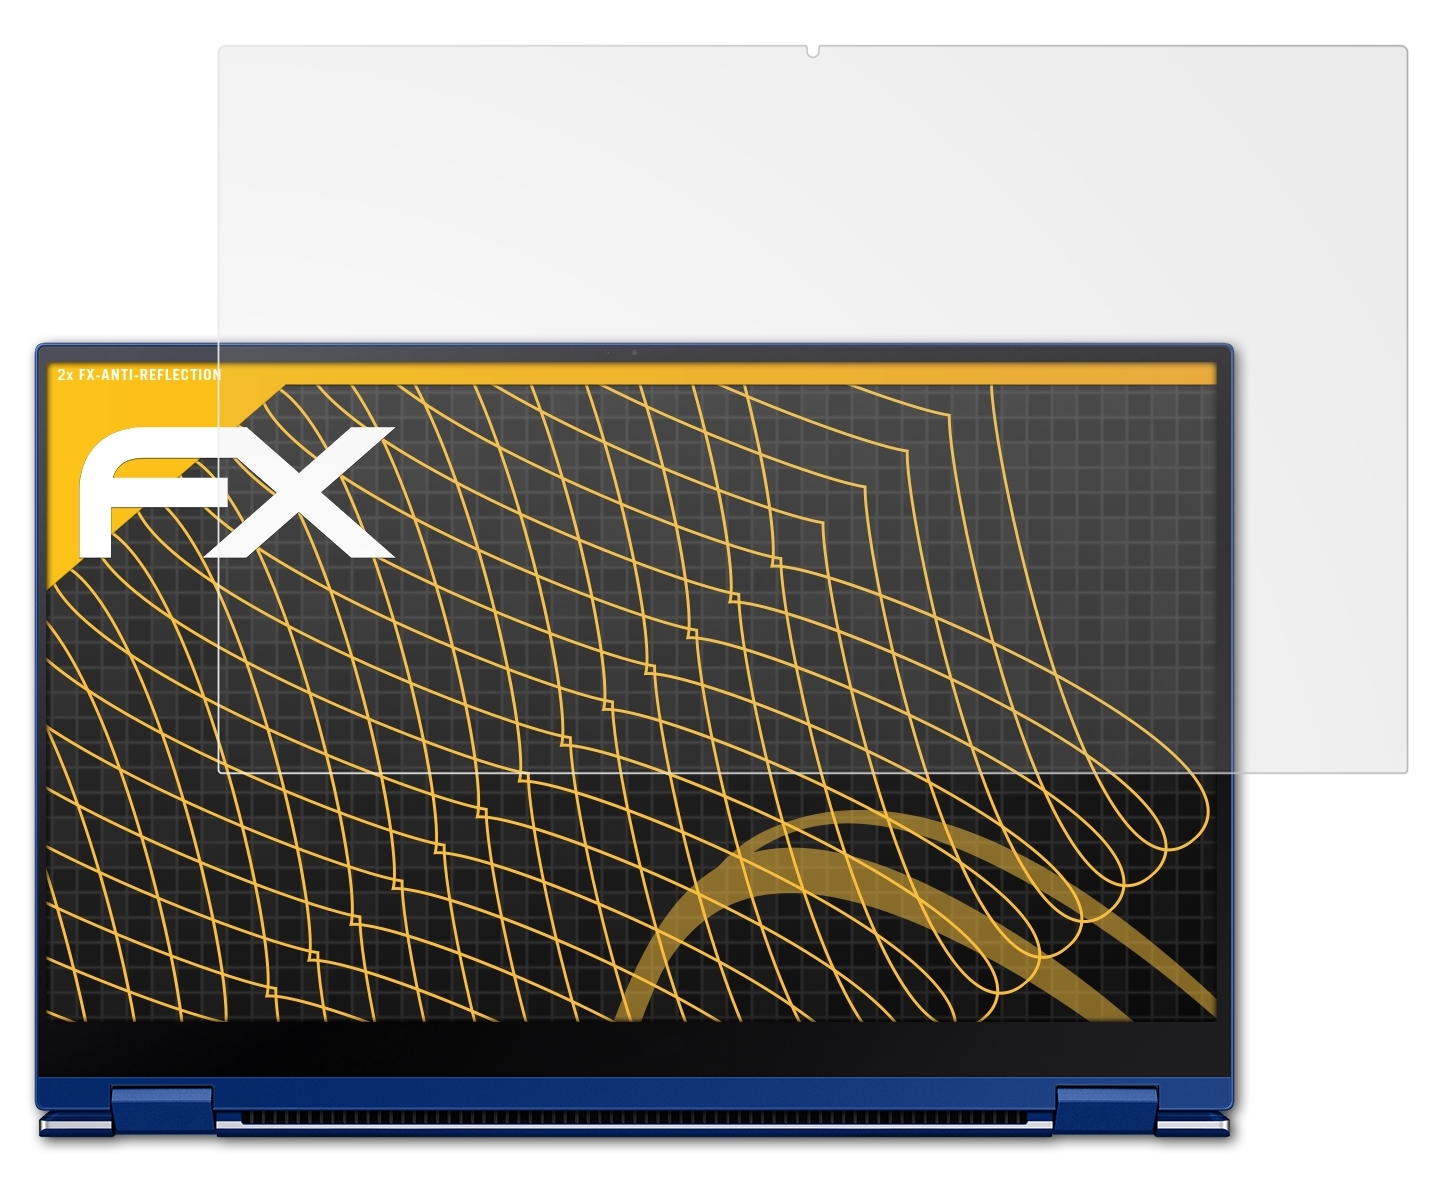 ATFOLIX 2x Flex (15 Galaxy Book Samsung inch)) FX-Antireflex Displayschutz(für